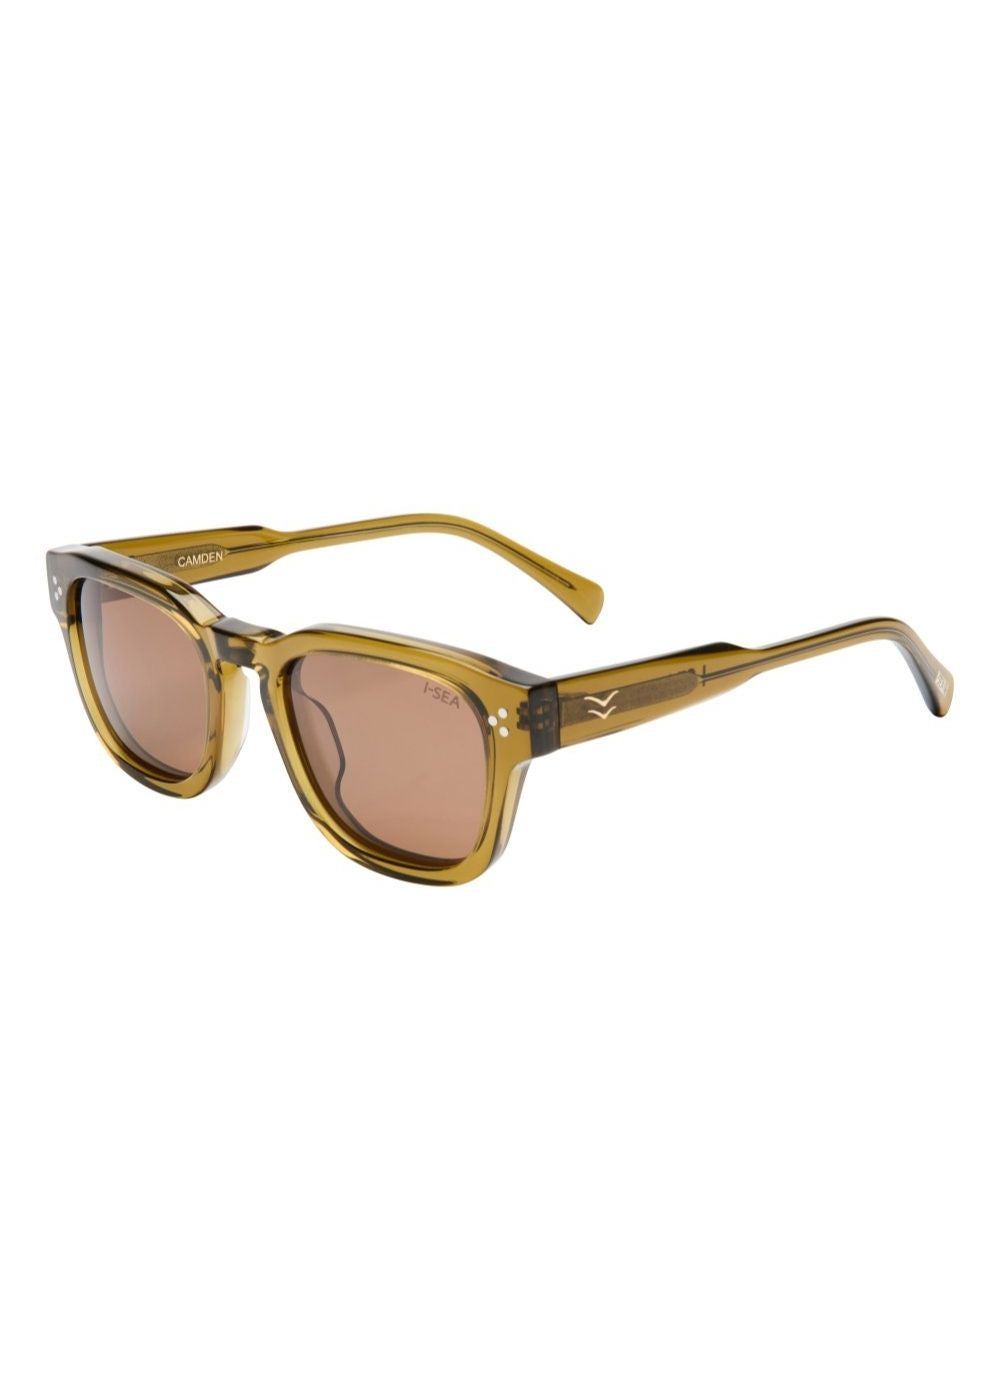 i-sea sunglasses - משקפי שמש דגם- Camden צבע_KELP/BROWNi-sea sunglasses - משקפי שמש דגם- Camden צבע: KELP/BROWN